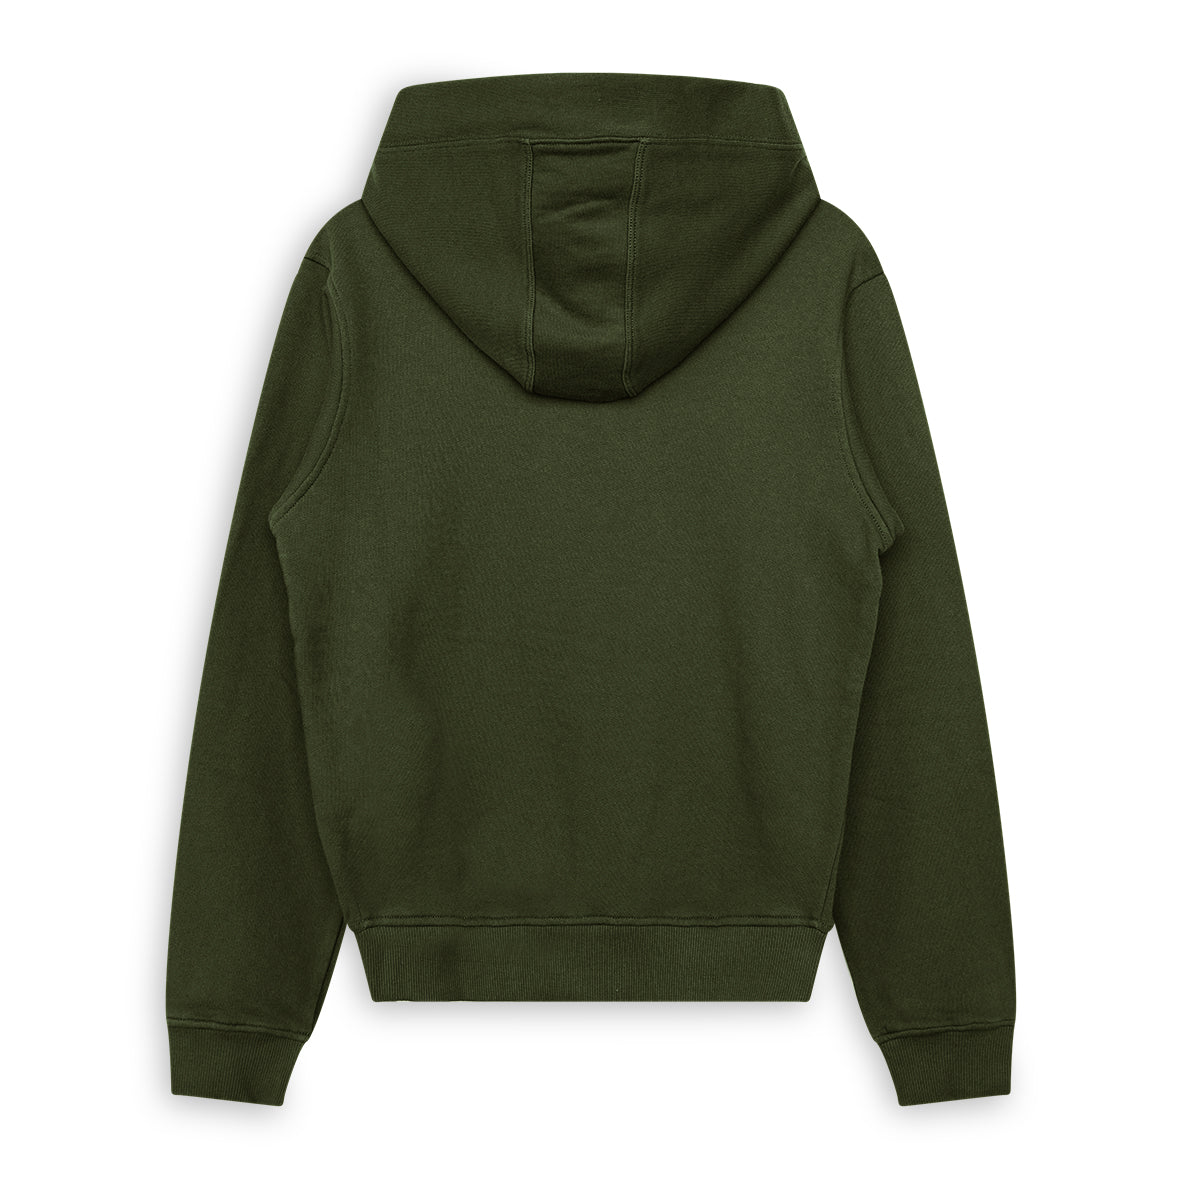 Jongens Hooded sweater van SevenOneSeven in de kleur Khaki Green in maat 170-176.